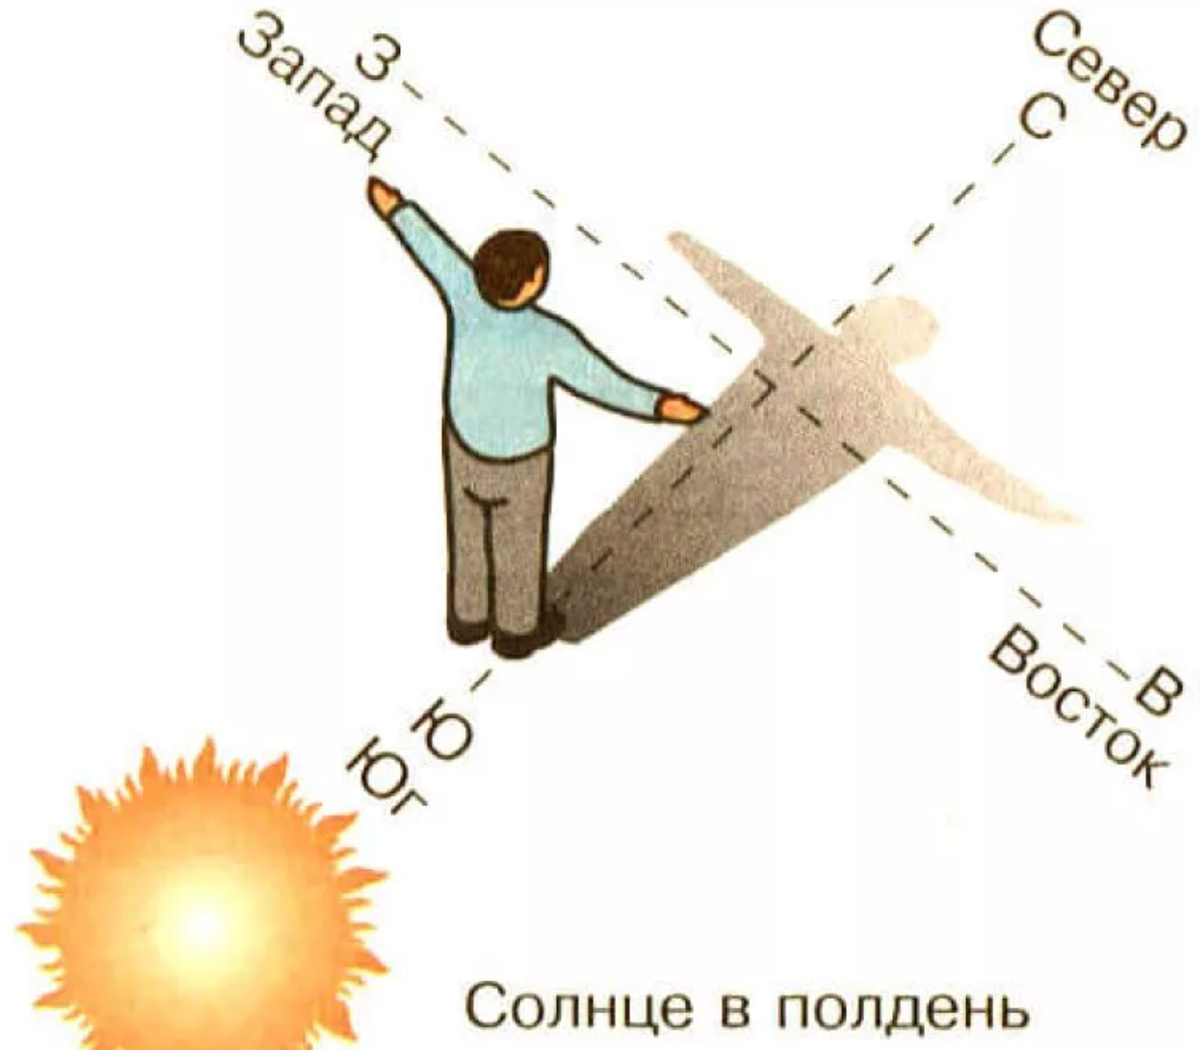 В 7 вечера где солнце. Ориентирование на местности по солнцу. Как определить стороны света по солнцу. Как ориентироваться по солнцу картинки. Как ориентироваться по солнцу в полдень.